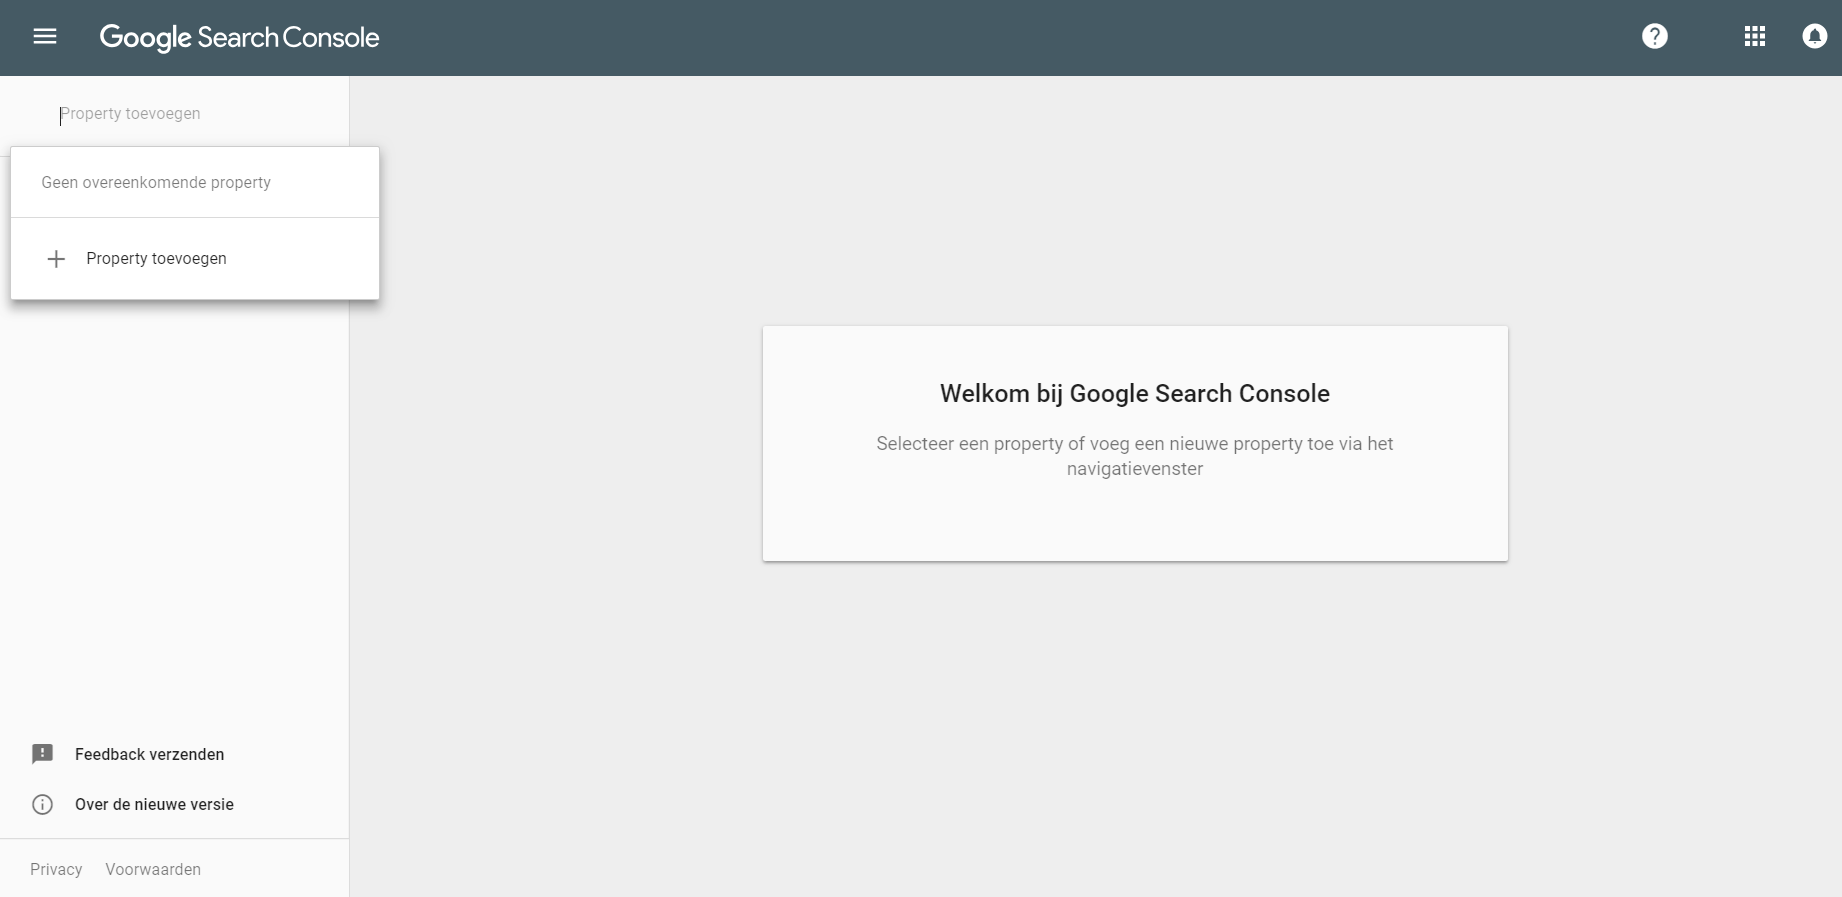 Poperty toevoegen in de Google search console